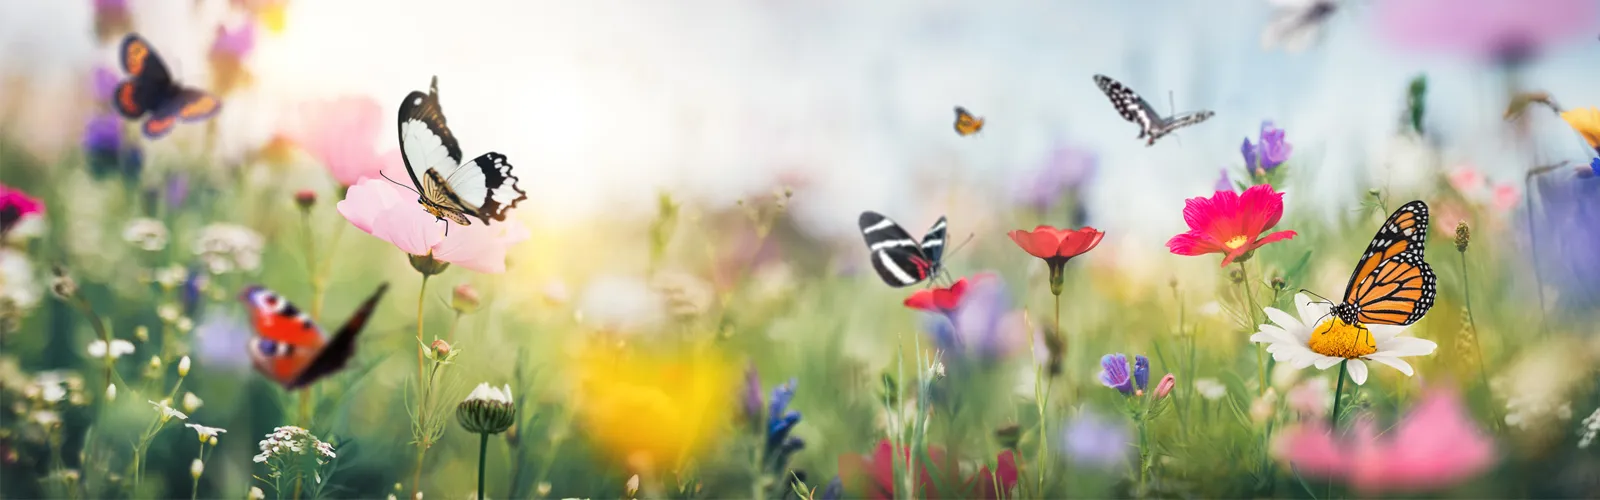 butterflies in a field of flowers